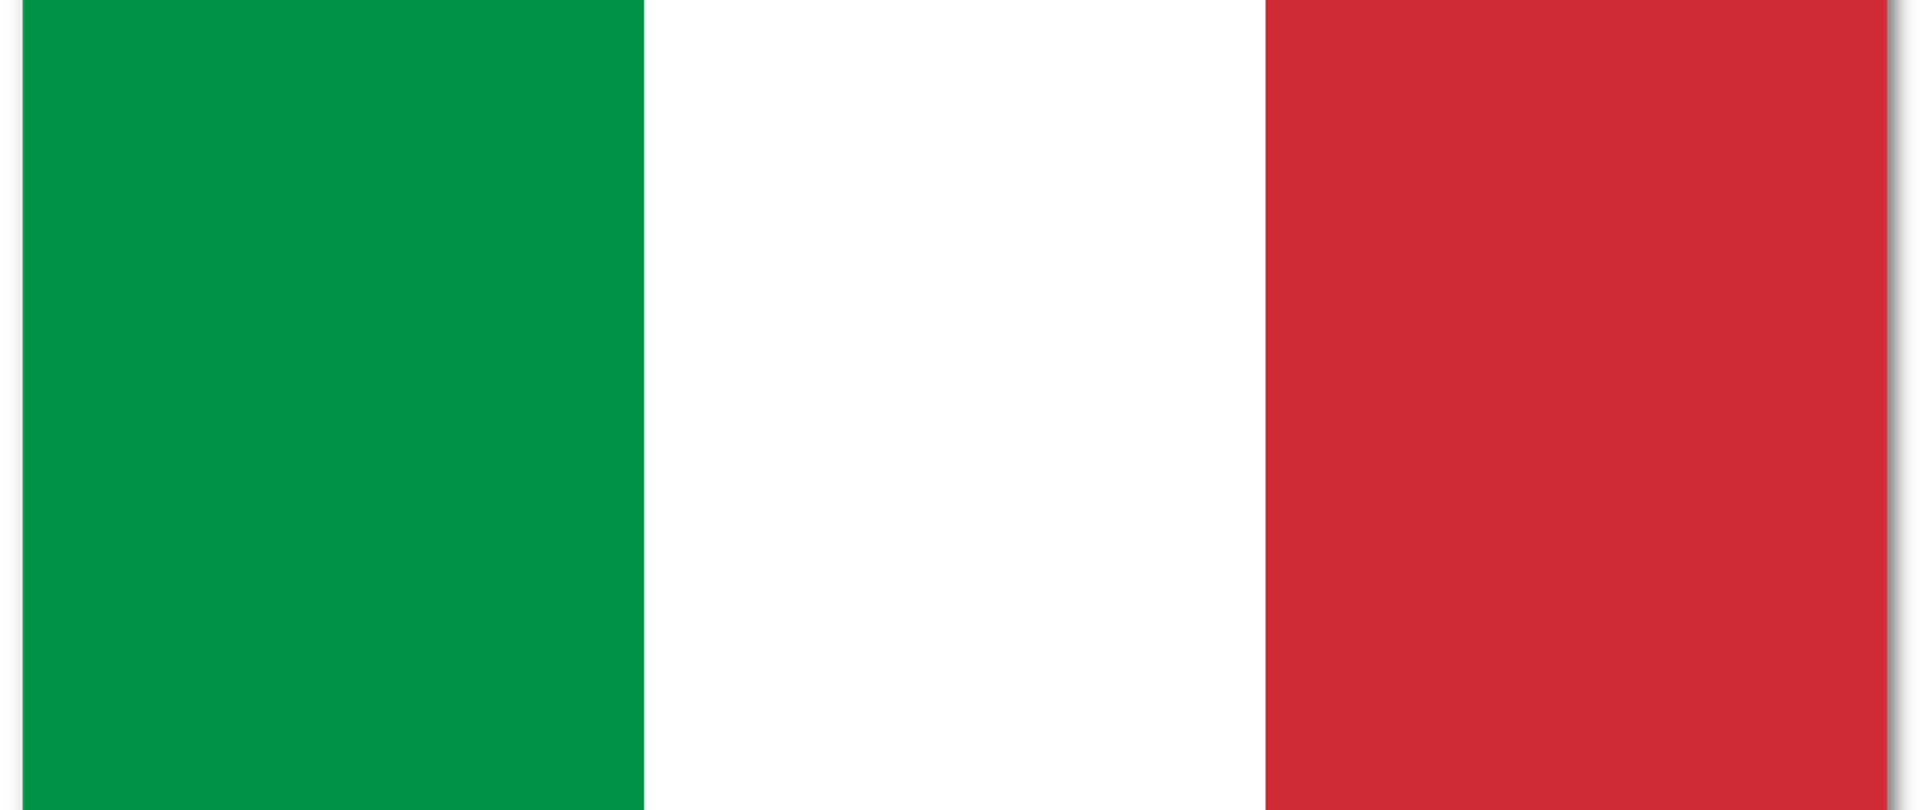 Zdjęcie przedstawia włoską flagę 